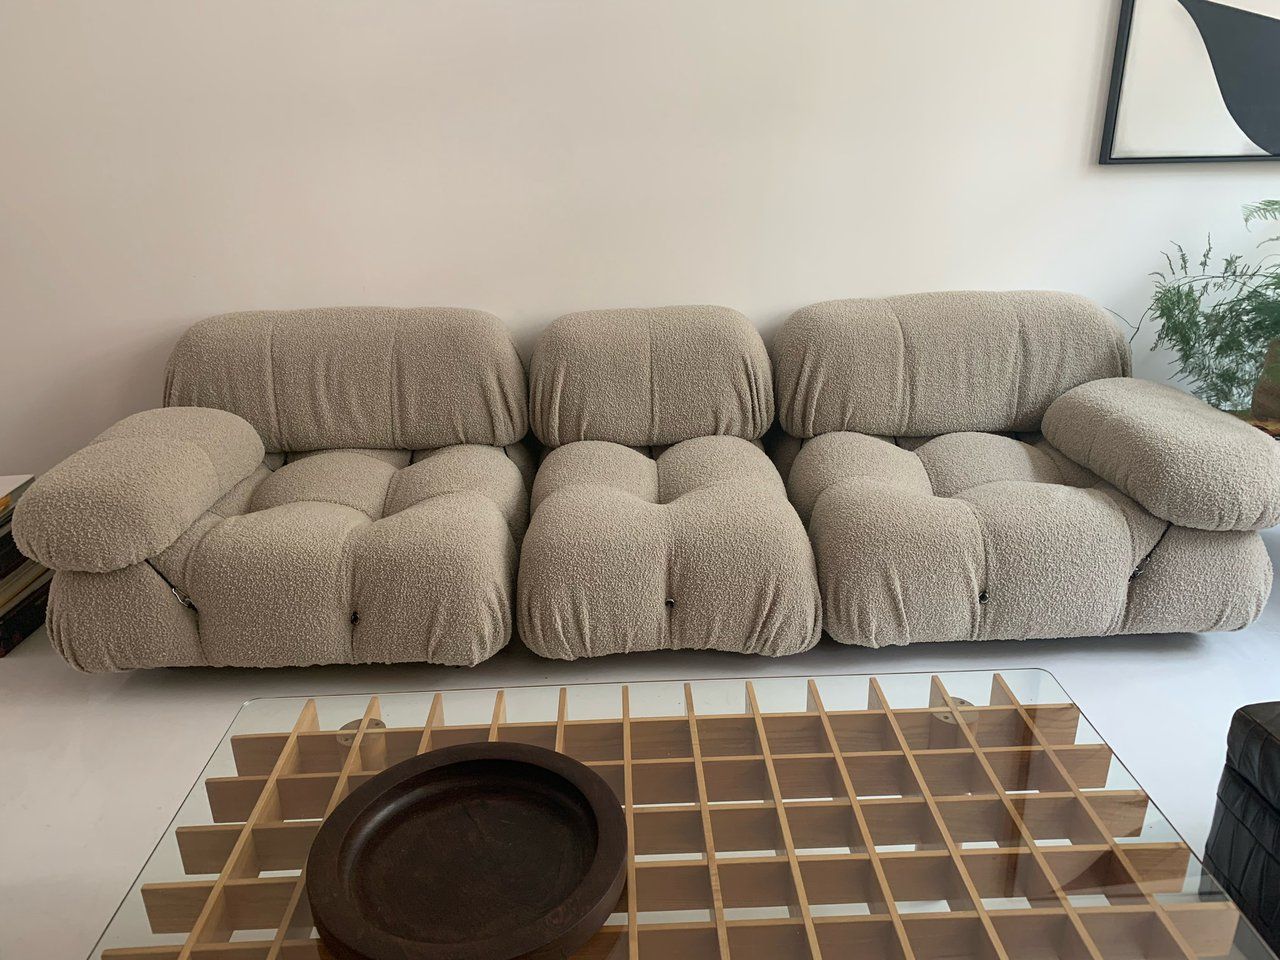 Zee ding Saga Italiaanse design meubels kopen - Grote voorraad bij Whoppah | Whoppah